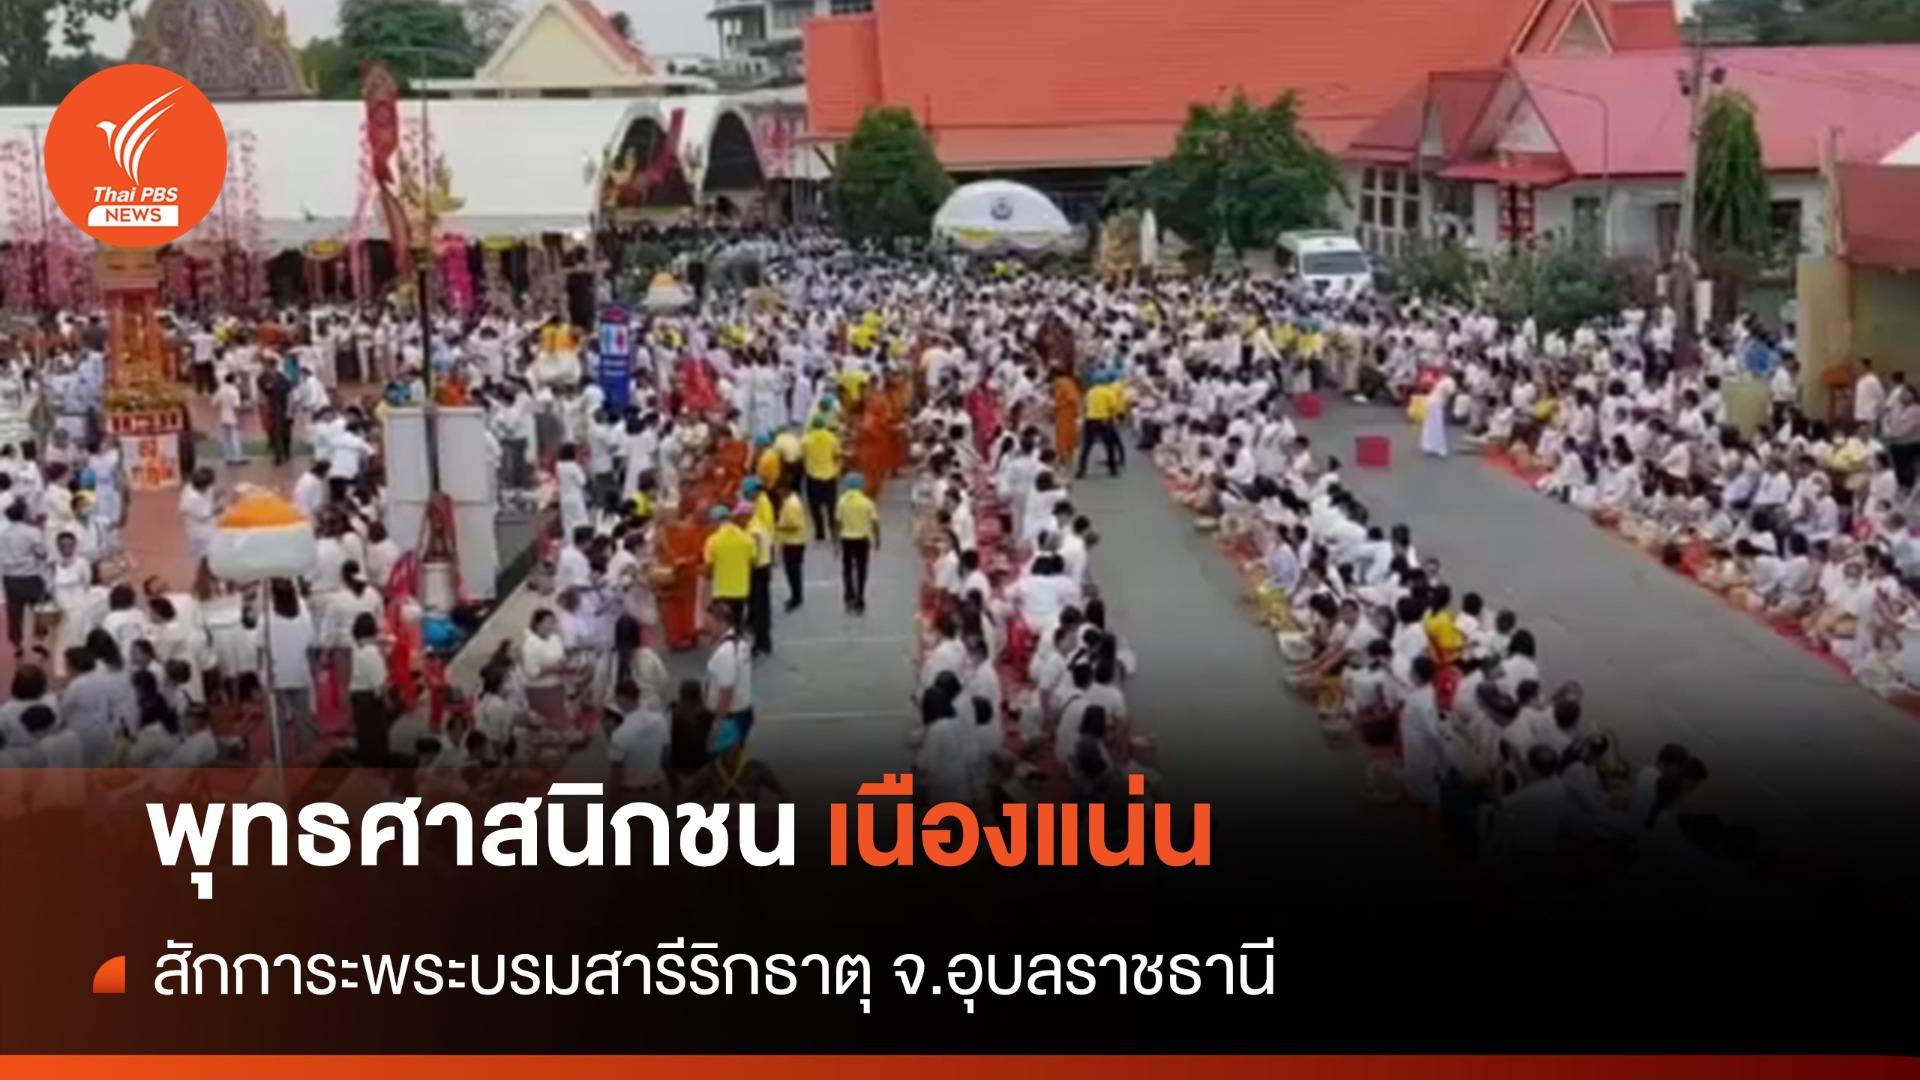 ชาวไทย-ลาวกราบสักการะพระบรมสารีริกธาตุ กว่า 500,000 คน 